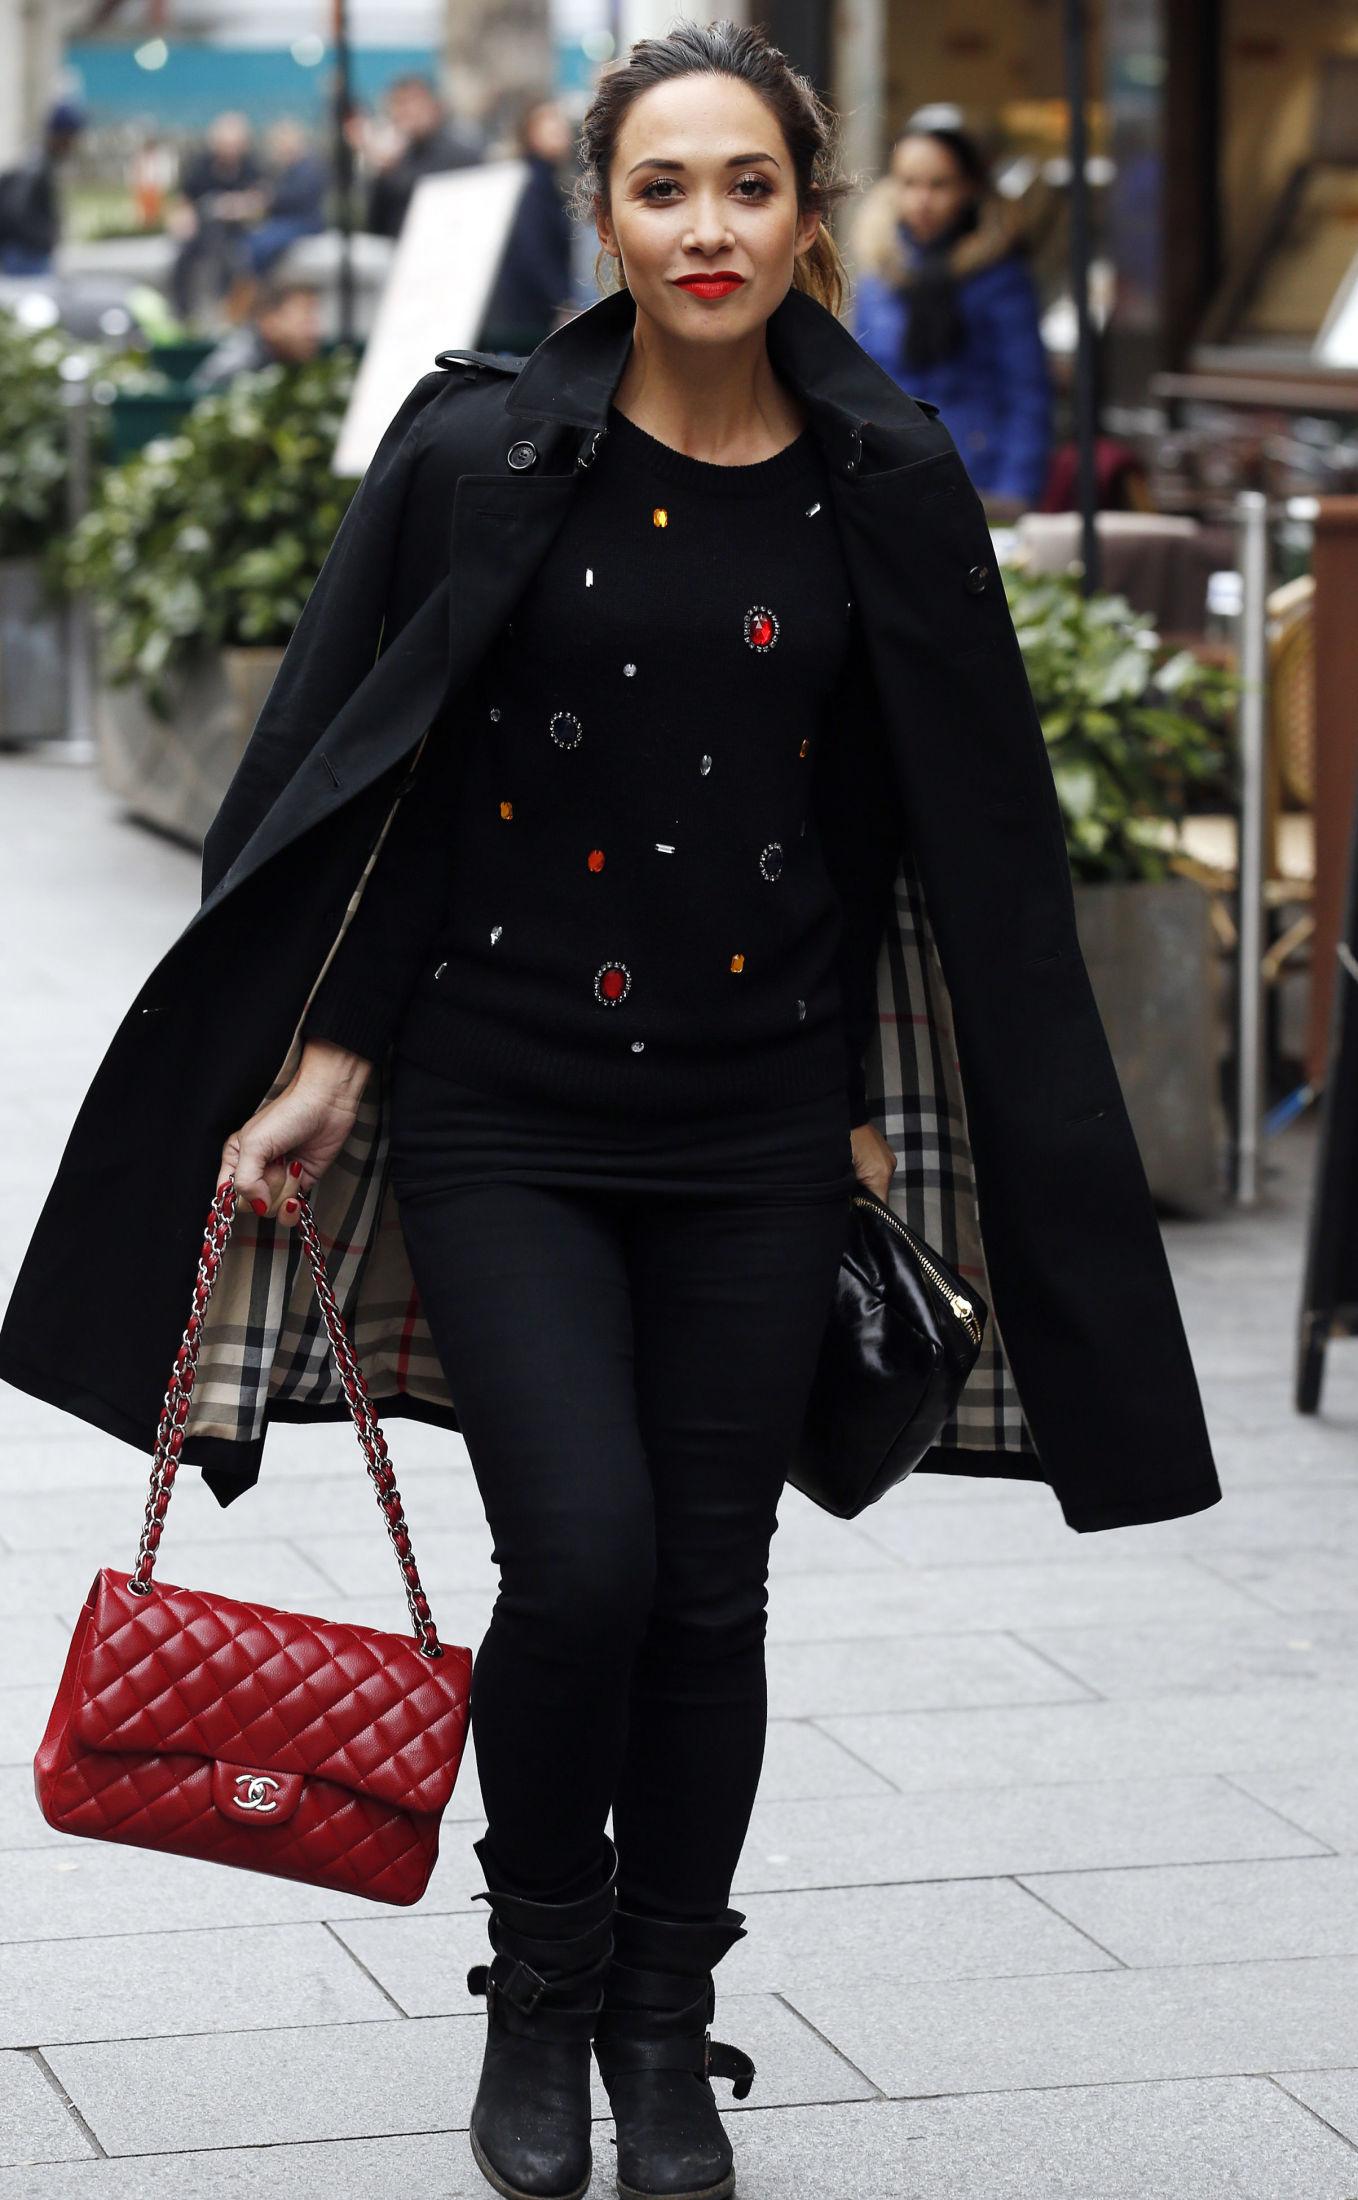 STOR: Modell og TV-personlighet Myleene Klass har skaffet seg en stor, rød Chanel-klassiker. Foto: Getty Images